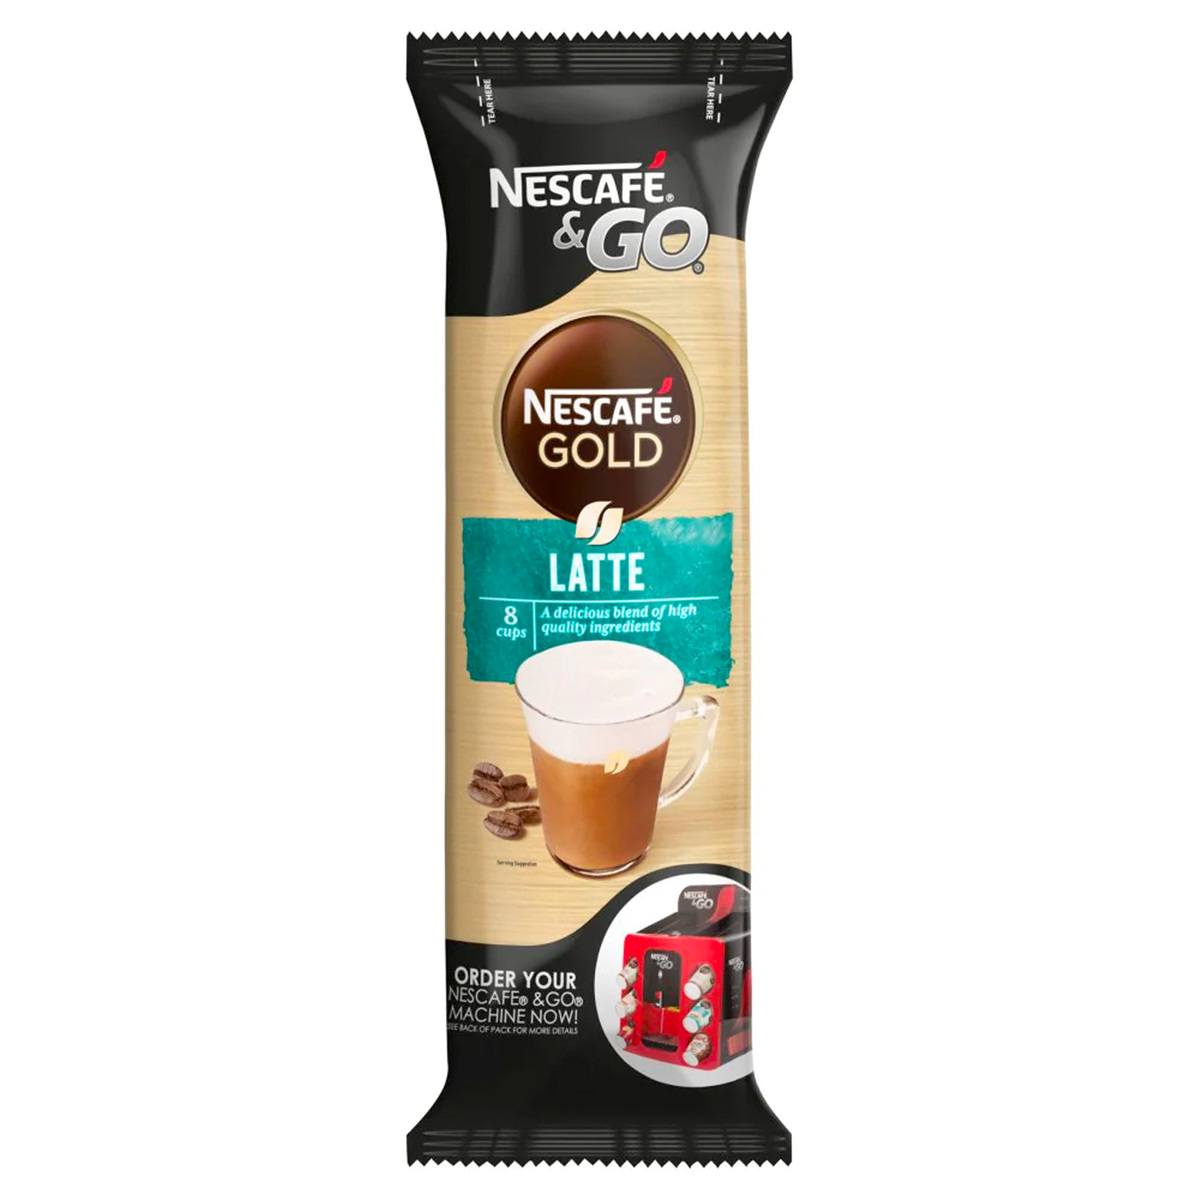 اشتري قم بشراء Nescafe & Go Gold Latte Coffee 8 x 23 g Online at Best Price من الموقع - من لولو هايبر ماركت Coffee في الكويت